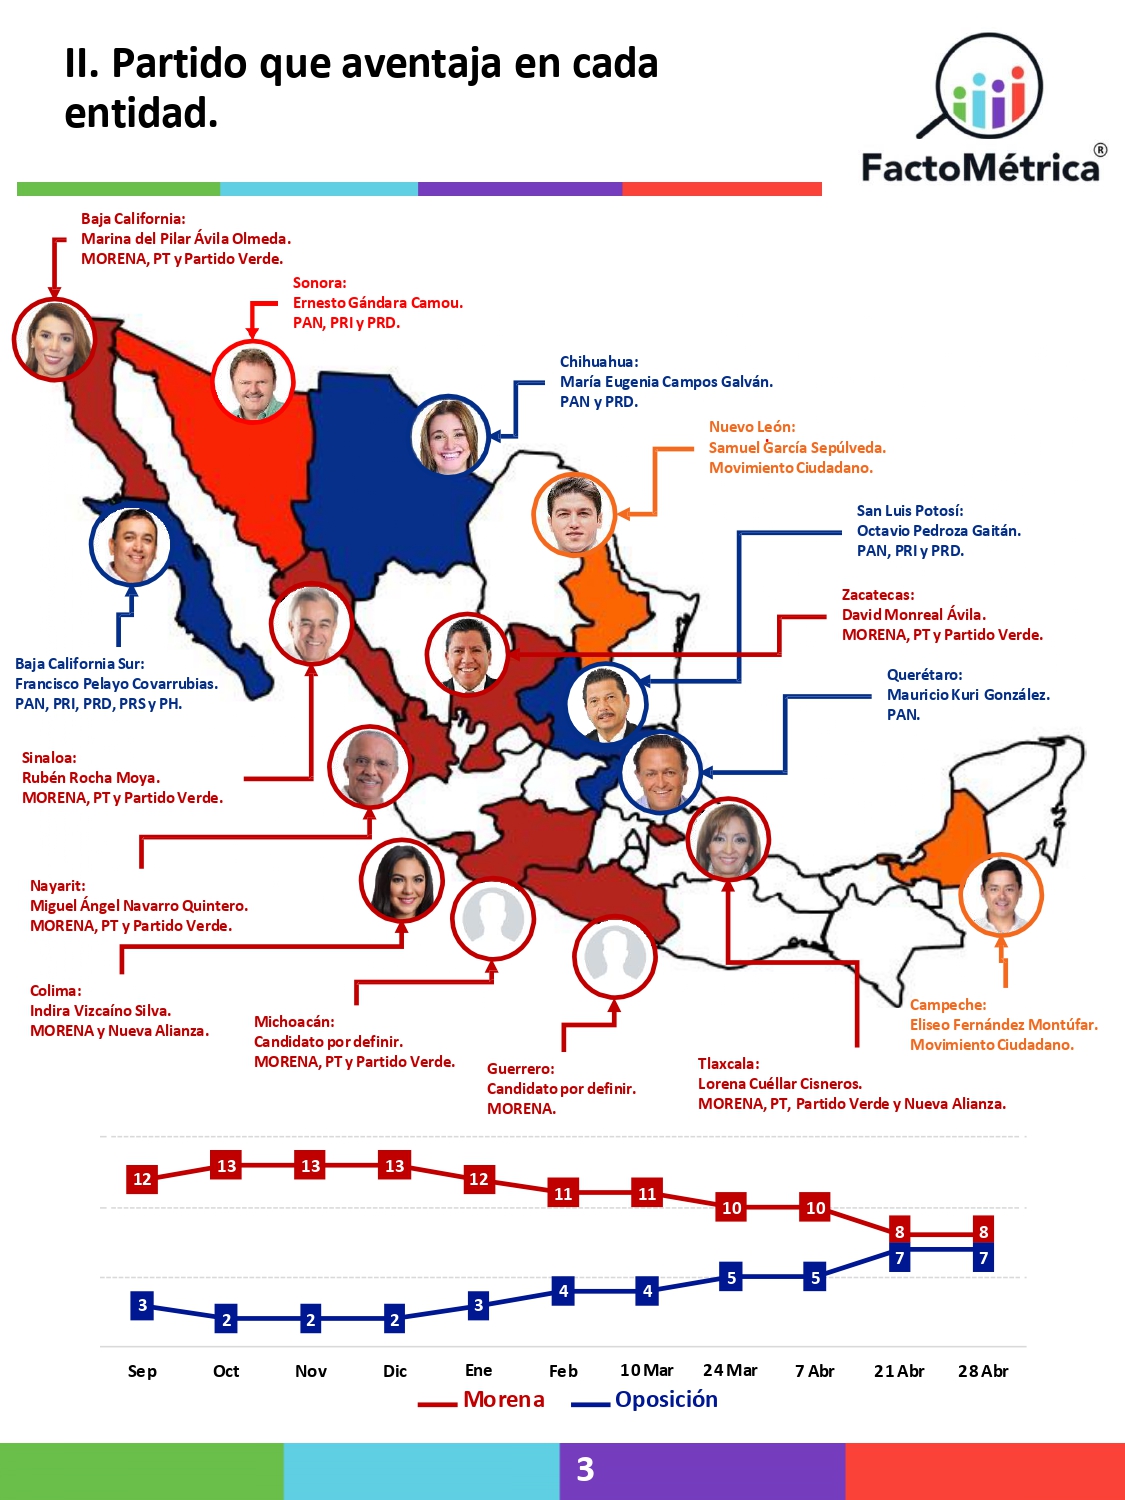 Se siguen cerrando las elecciones en varios estados: Factométrica